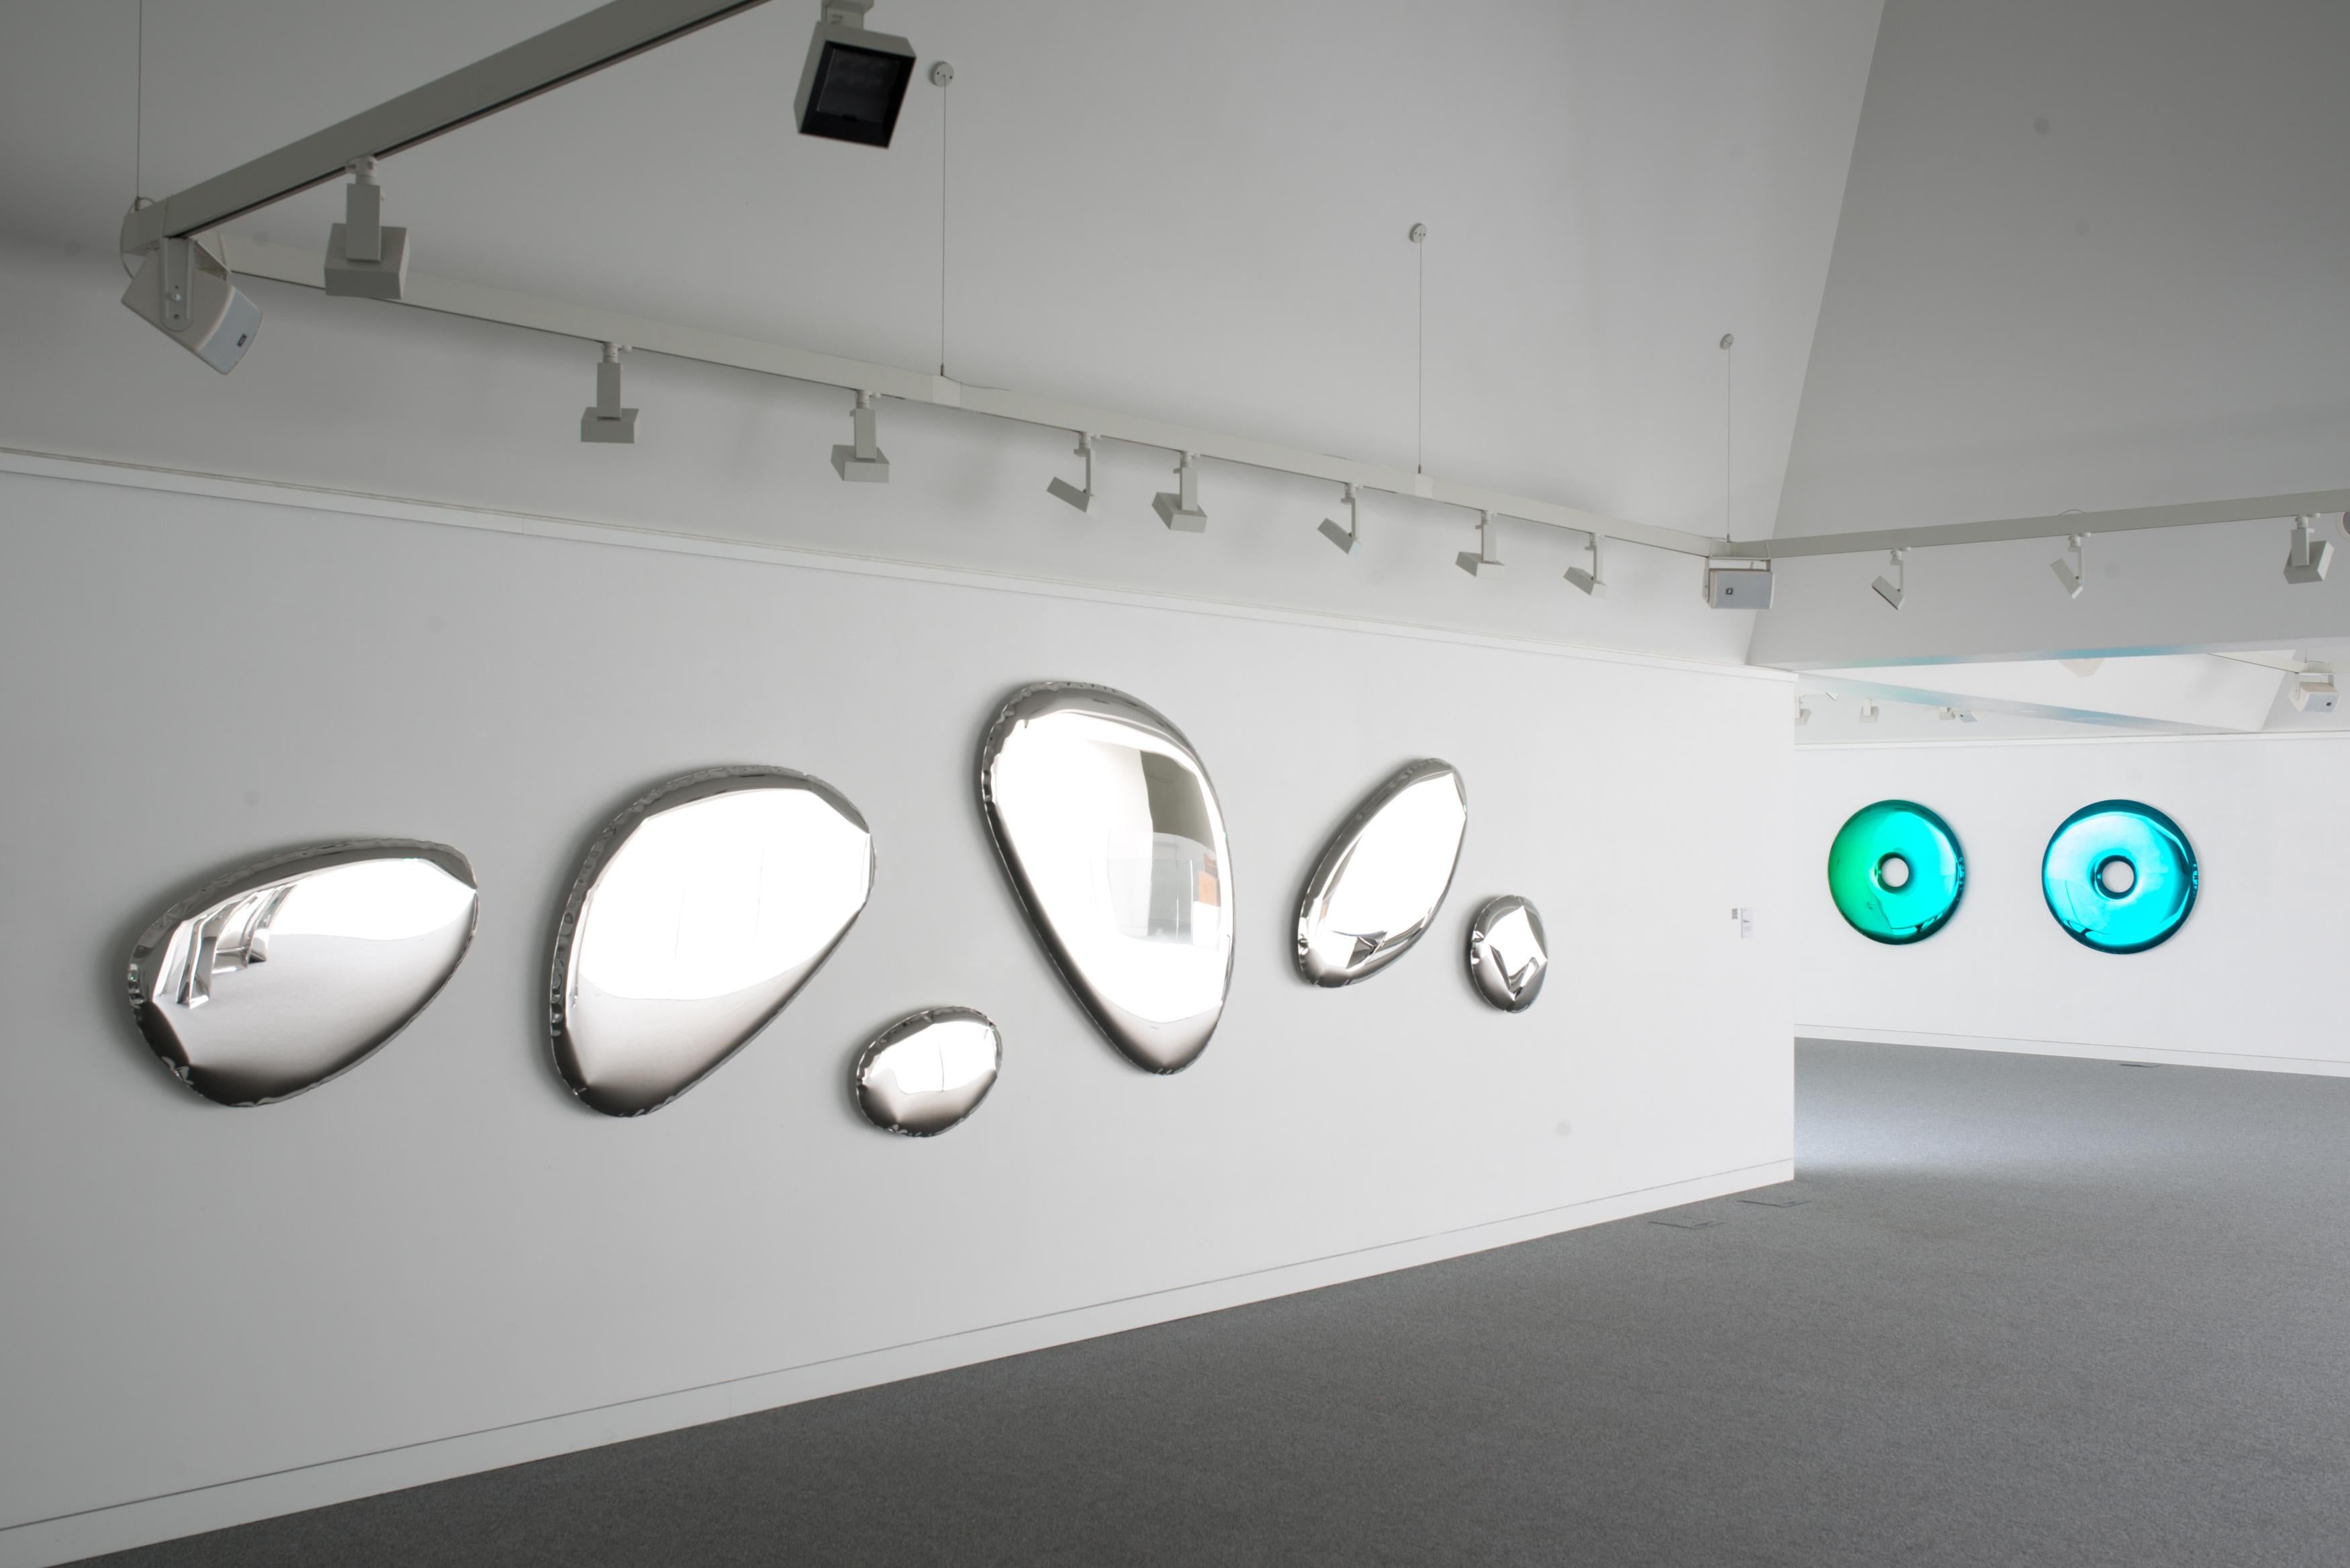 Die Serie TAFLA O zeichnet sich durch glatte, optisch leichte Formen aus, die von Flüssigkeitstropfen inspiriert sind, und verbindet dank ihrer einzigartigen Form die Welt des Designs, der Kunst und der Technologie. Die TAFLA-Sammlung ist ein